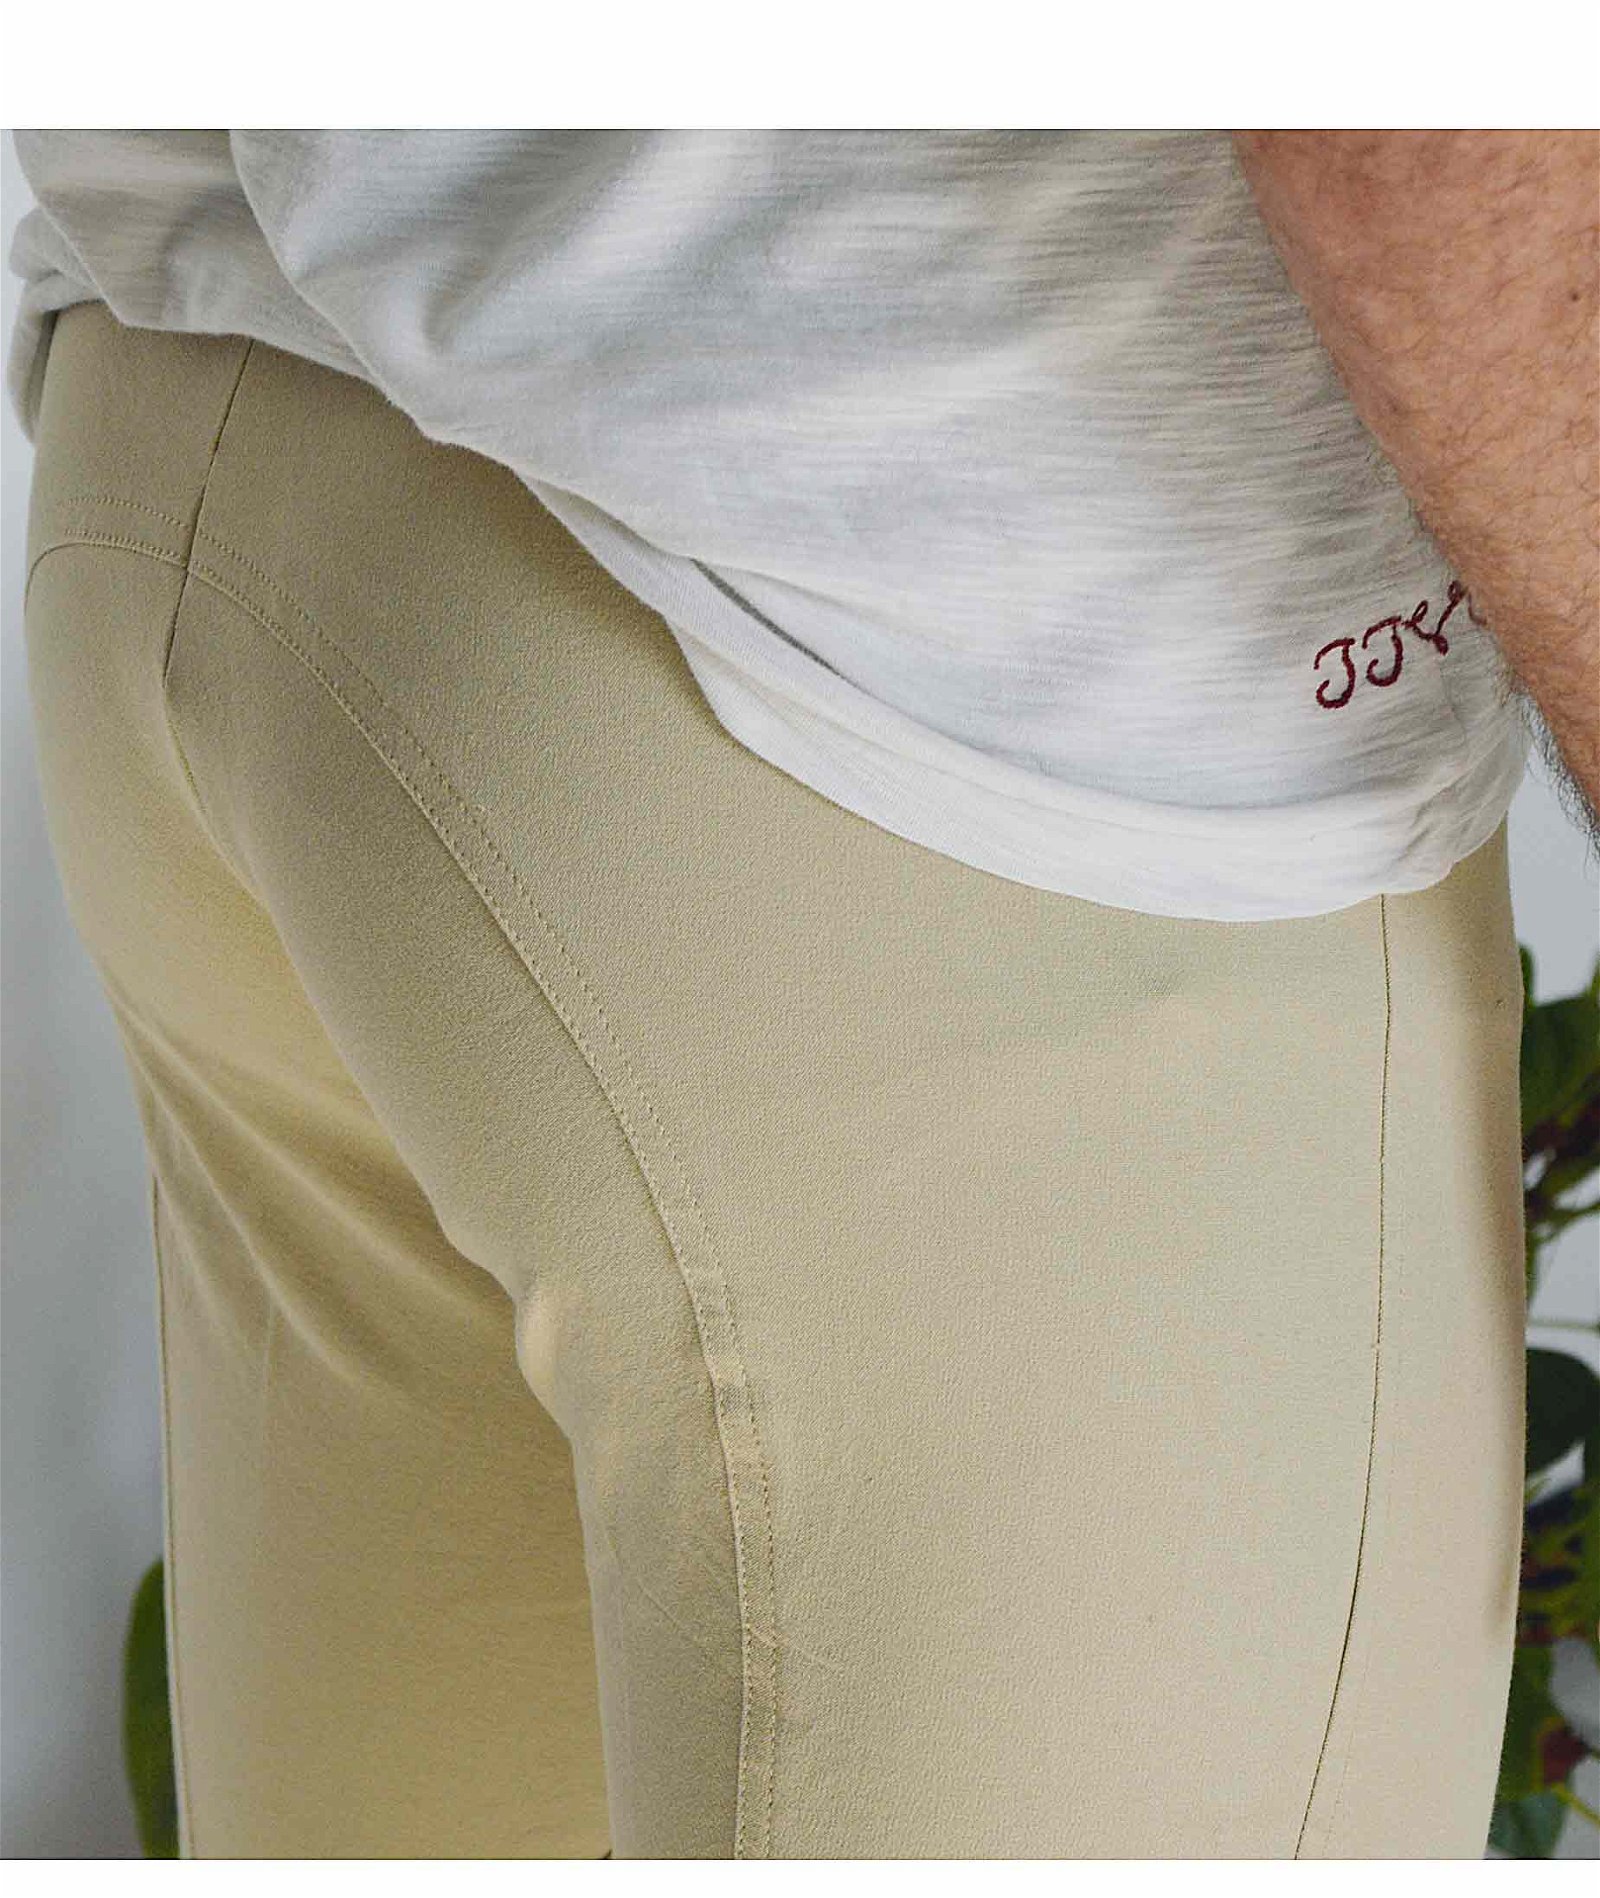 PROMOZIONE Pantalone equitazione uomo Equi Comfort Plus anatomico invernale doppia regolazione alla vita e 2 tasche - foto 5